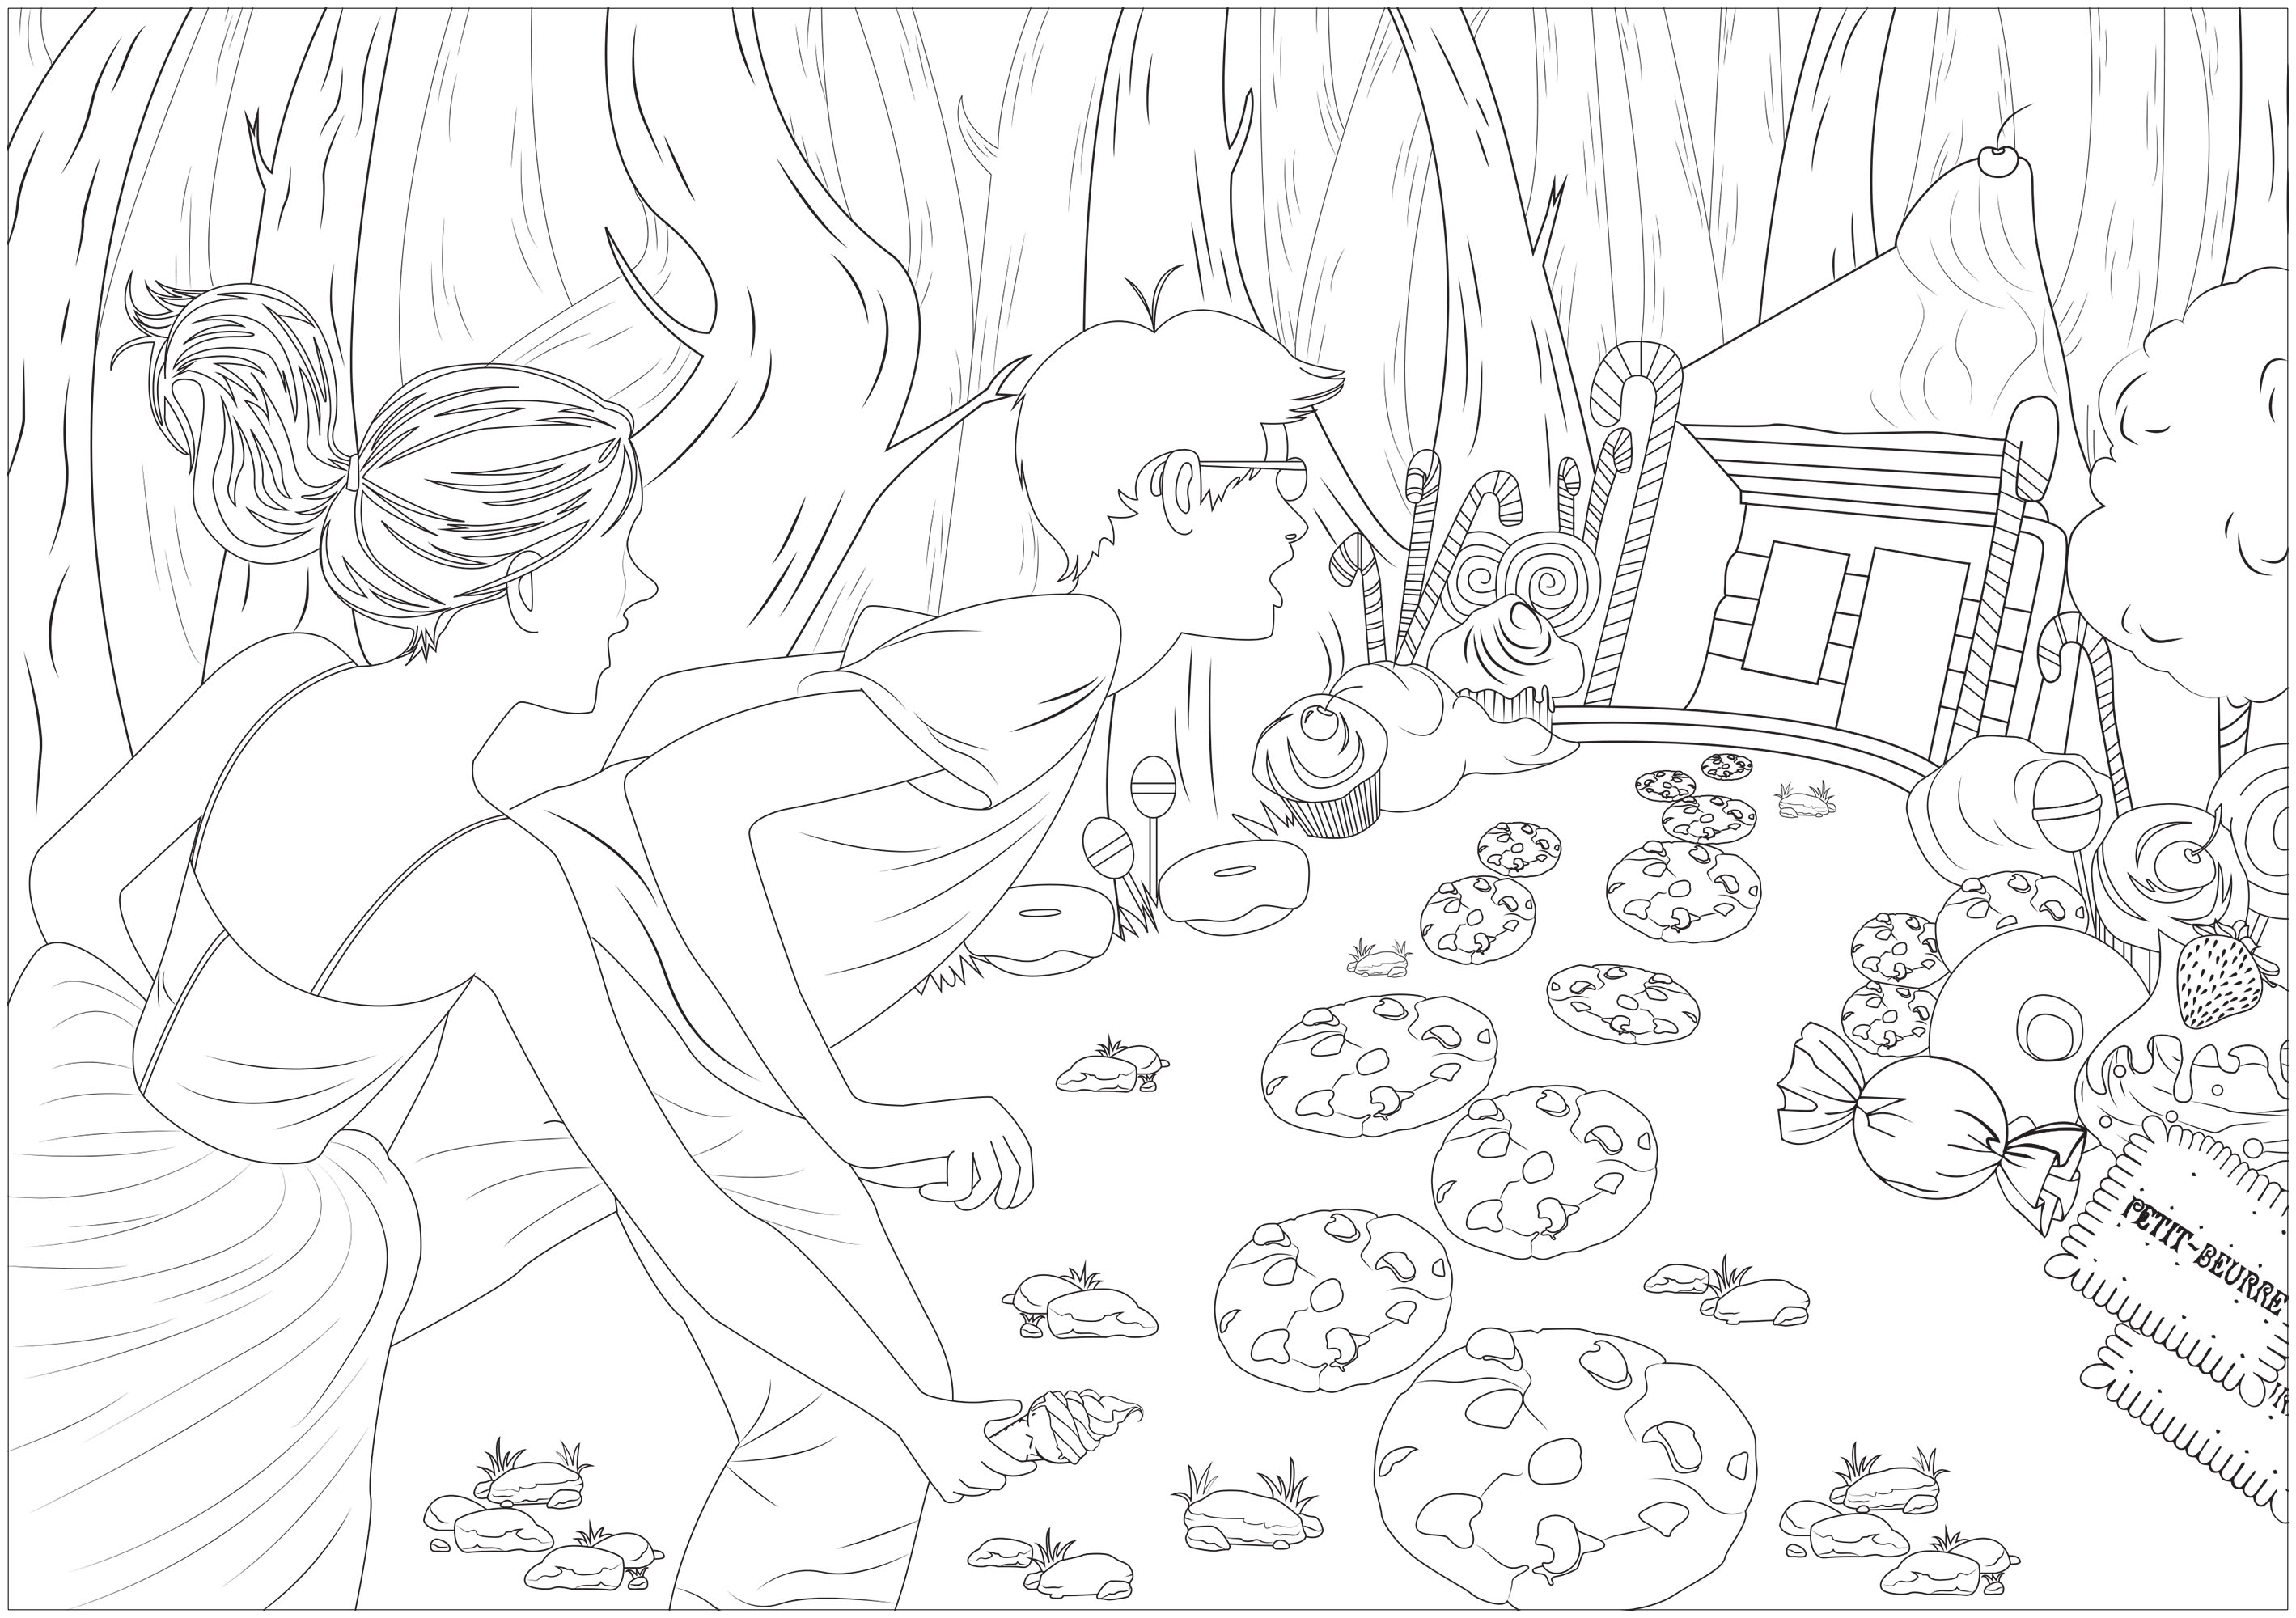 Ilustração inspirada em Hansel & Gretel, conto de fadas gravado pelos irmãos Grimm